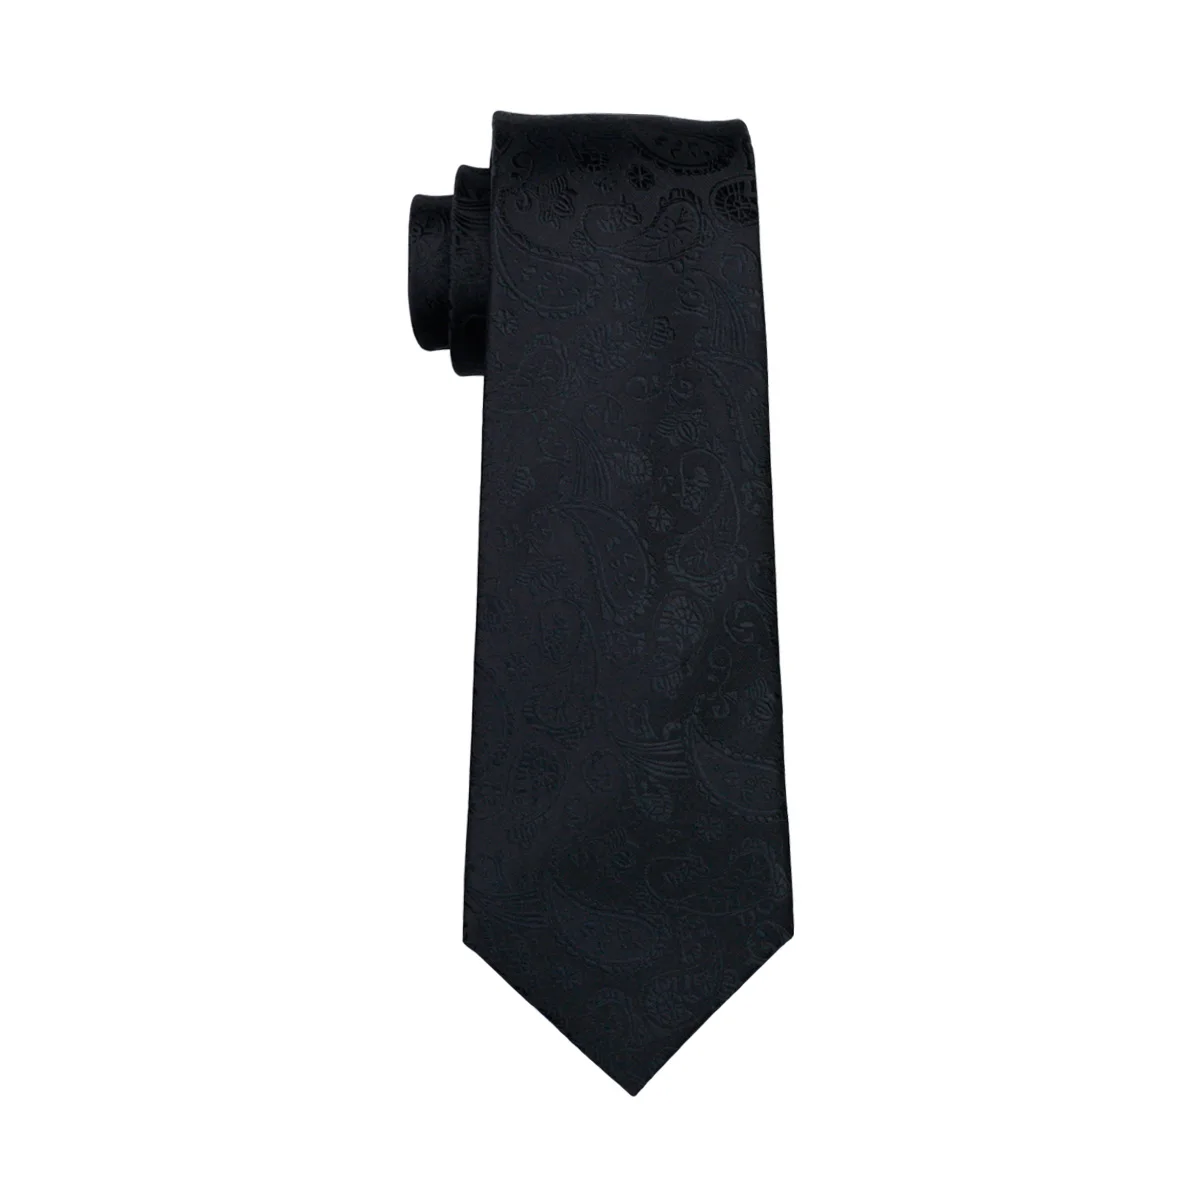 FA-823,, мужской галстук, черный, Пейсли, Шелковый, классический, жаккардовый, тканый галстук, Hanky, запонки, набор для бизнеса, свадьбы, вечеринки